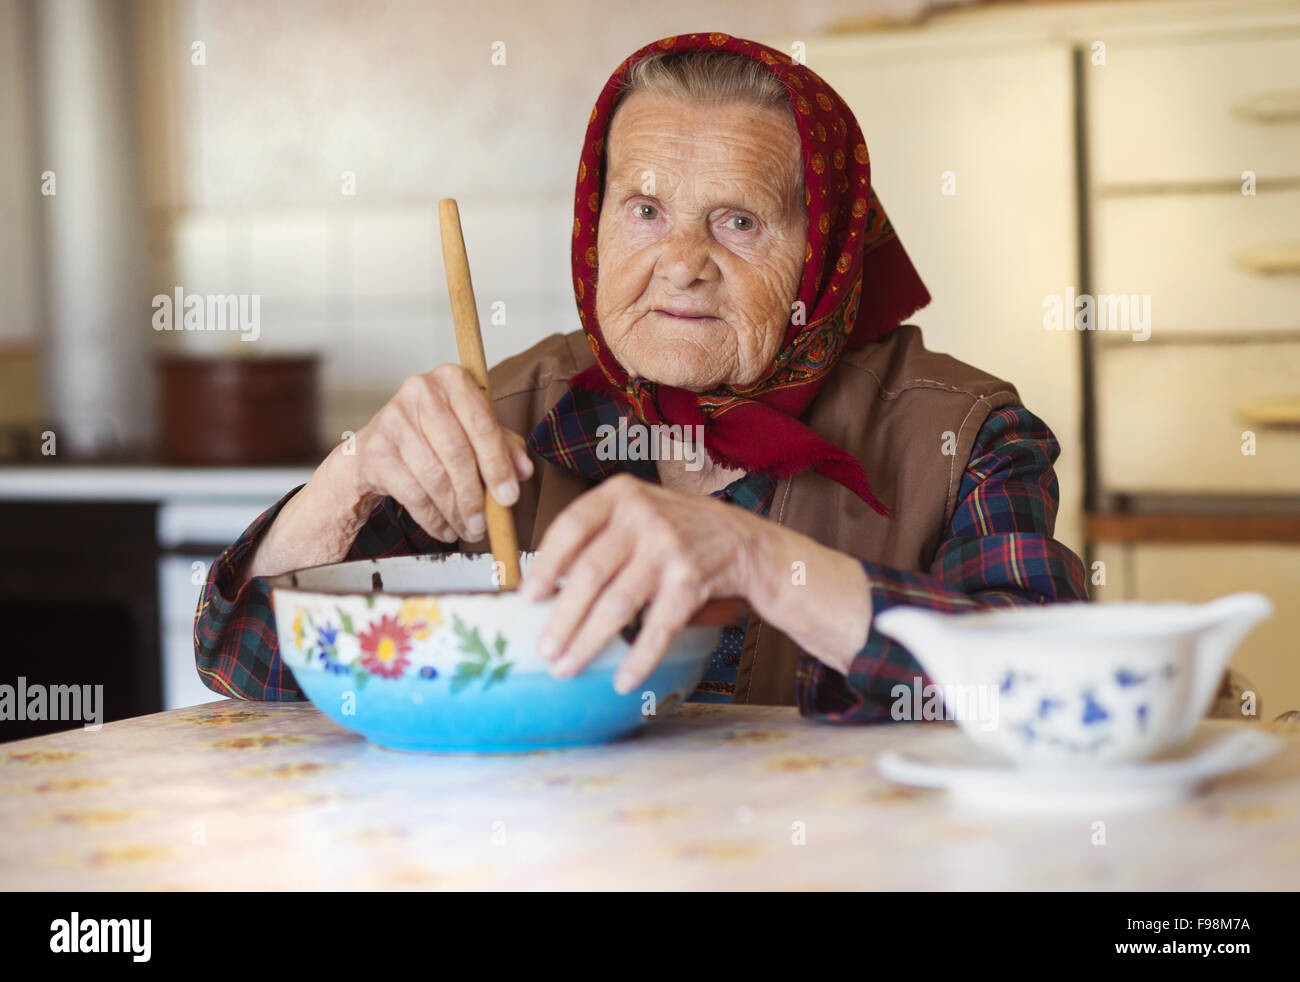 Molto vecchia donna nella preparazione degli alimenti nel suo vecchio stile country kitchen Foto Stock